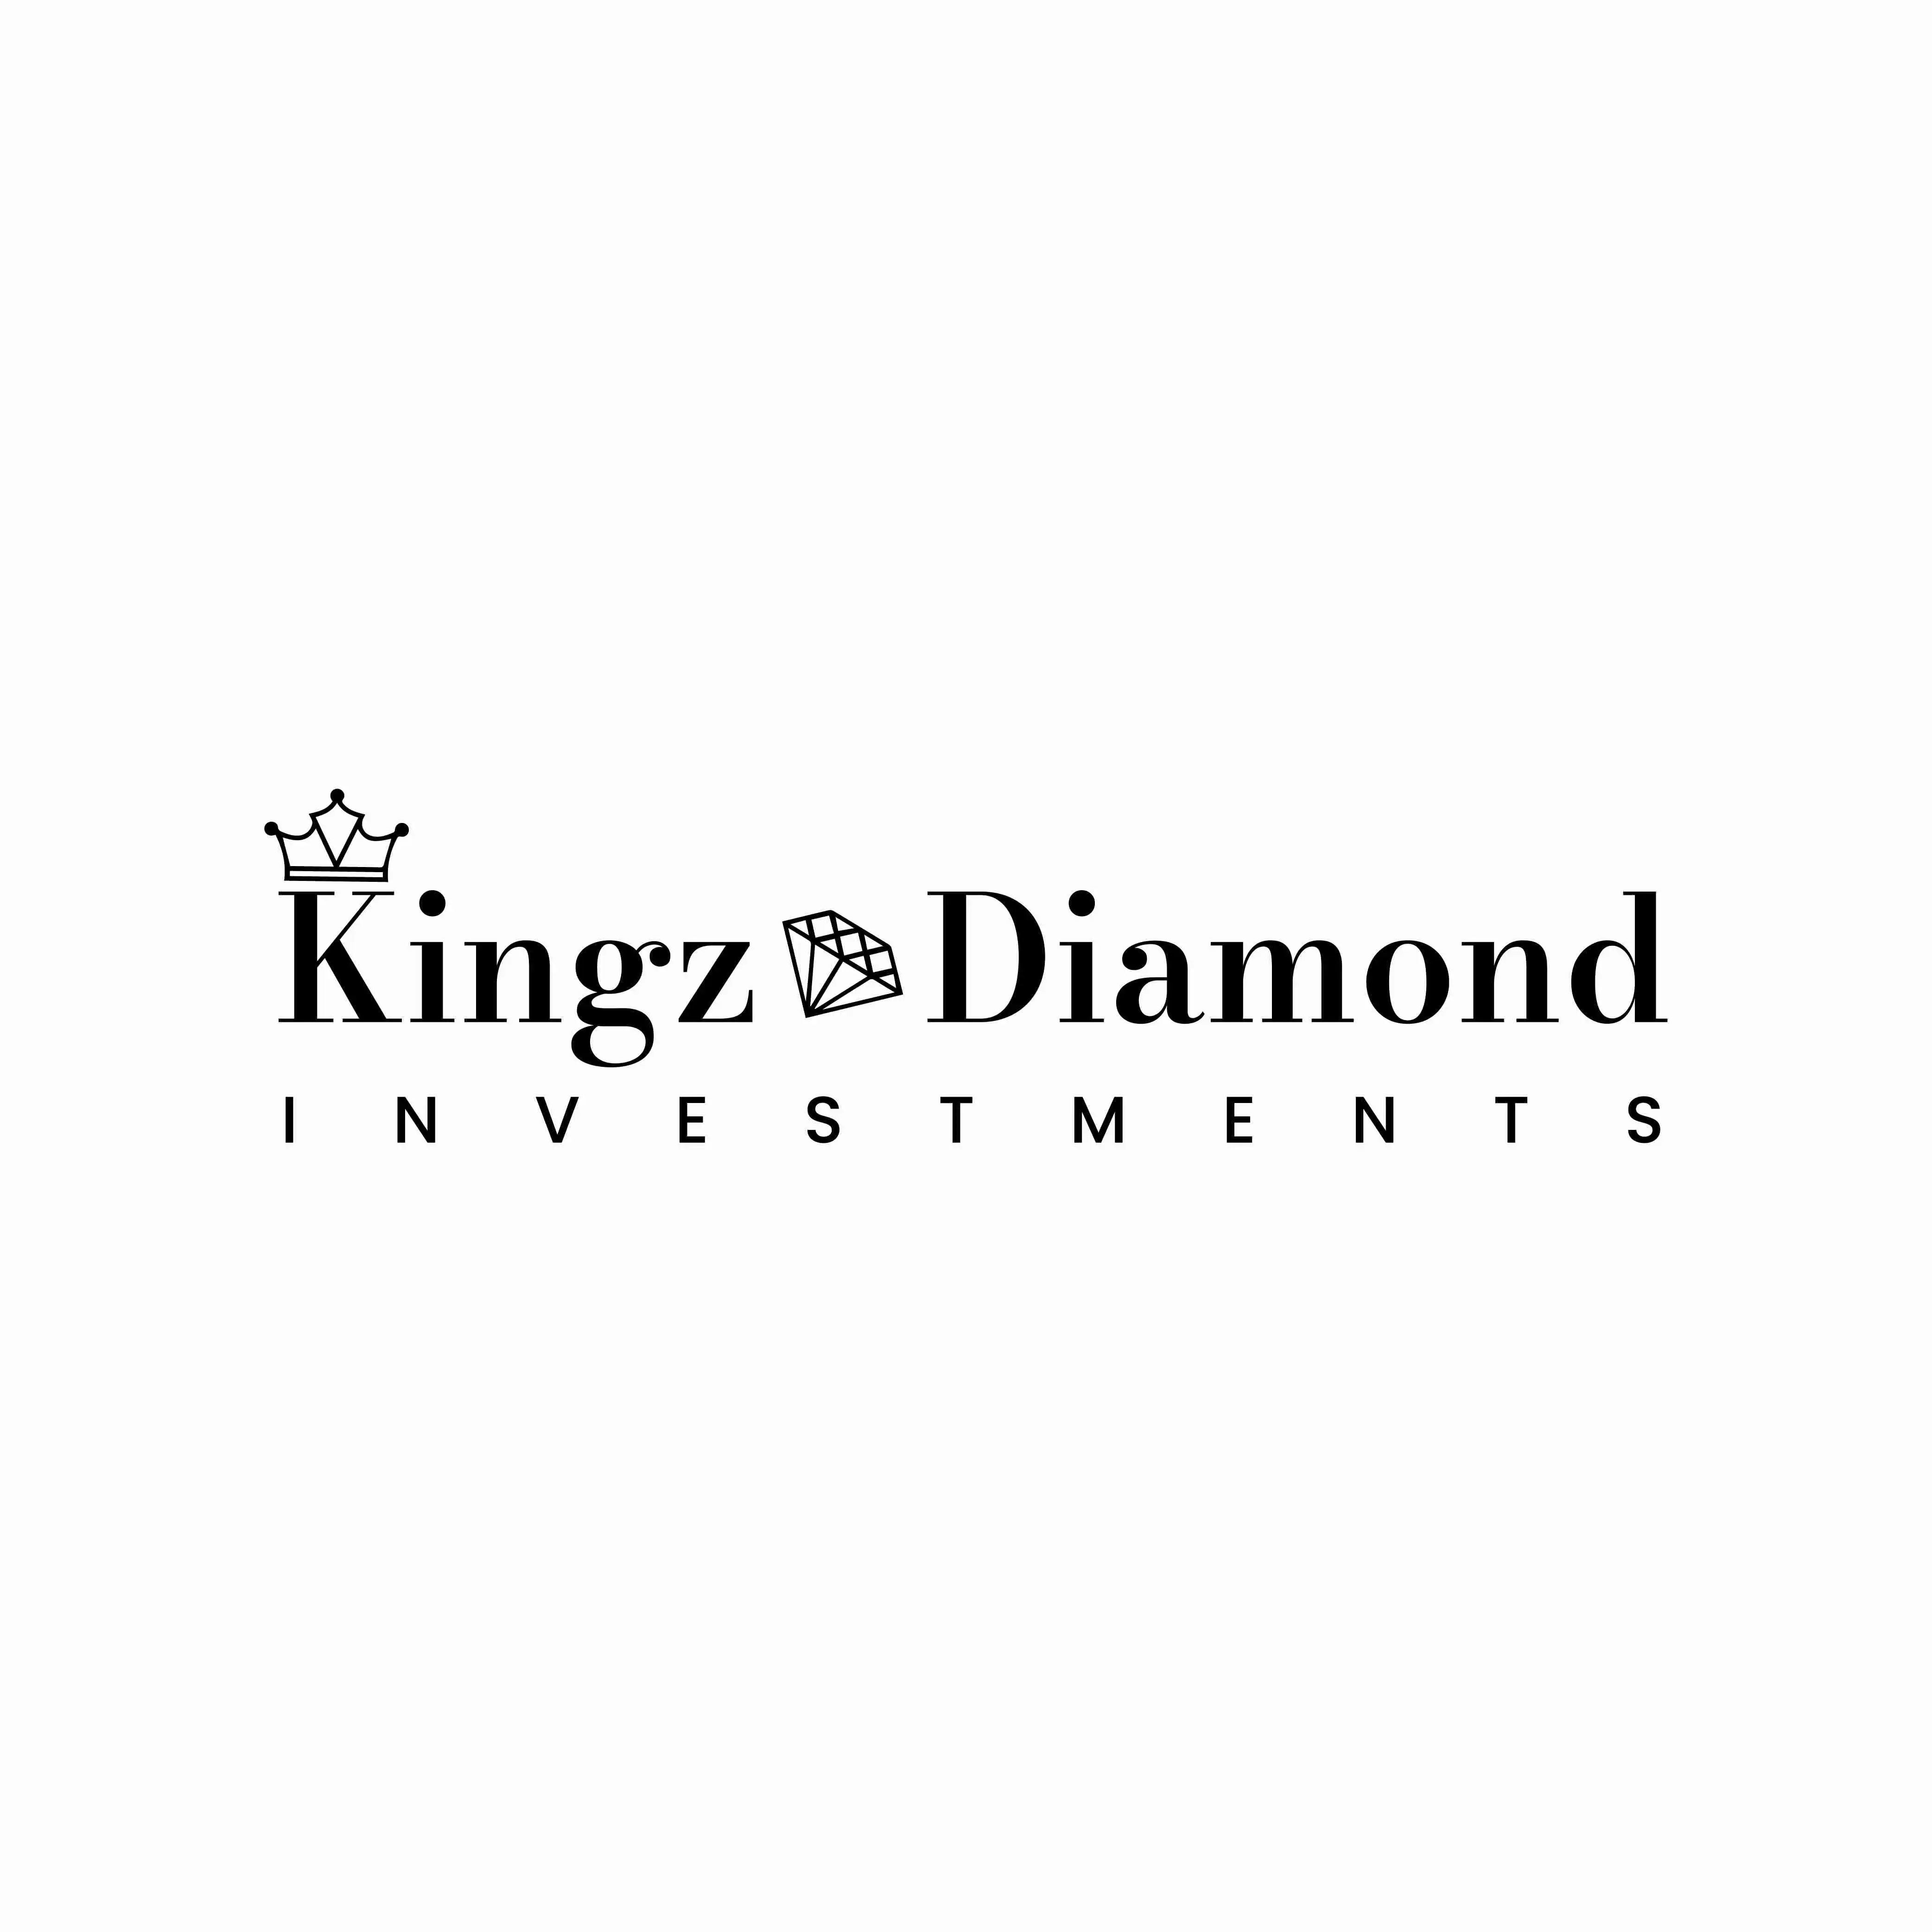 Kingz-Diamond-by-Design-Pros-USA